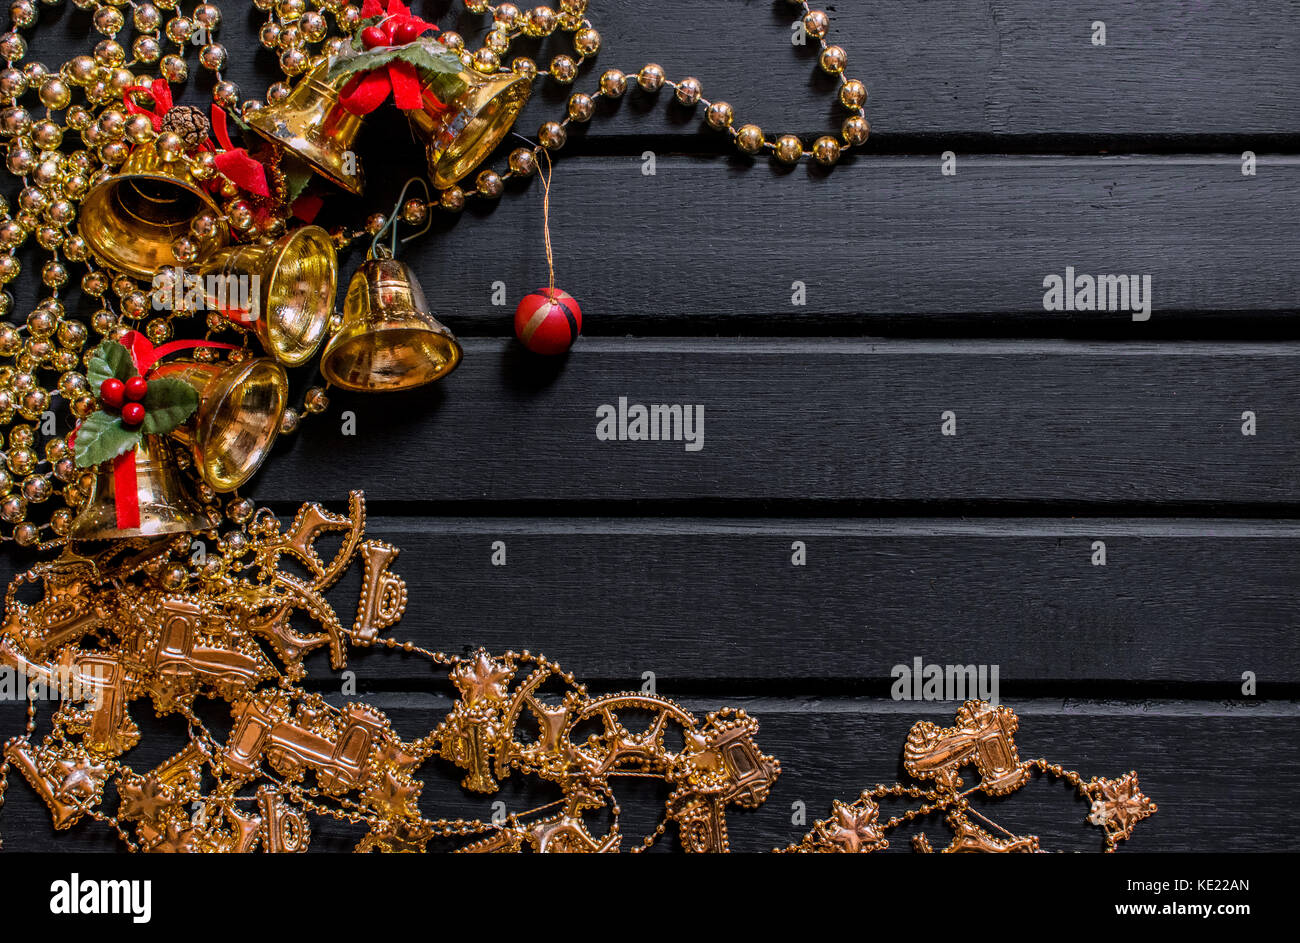 Weihnachtsdekoration Hintergrund, auf einem schwarzen Hintergrund Holz, mit Glocken, Mistel, goldene Ketten, Kugeln und Requisiten und Kette mit Rentier, und Dekor Stockfoto